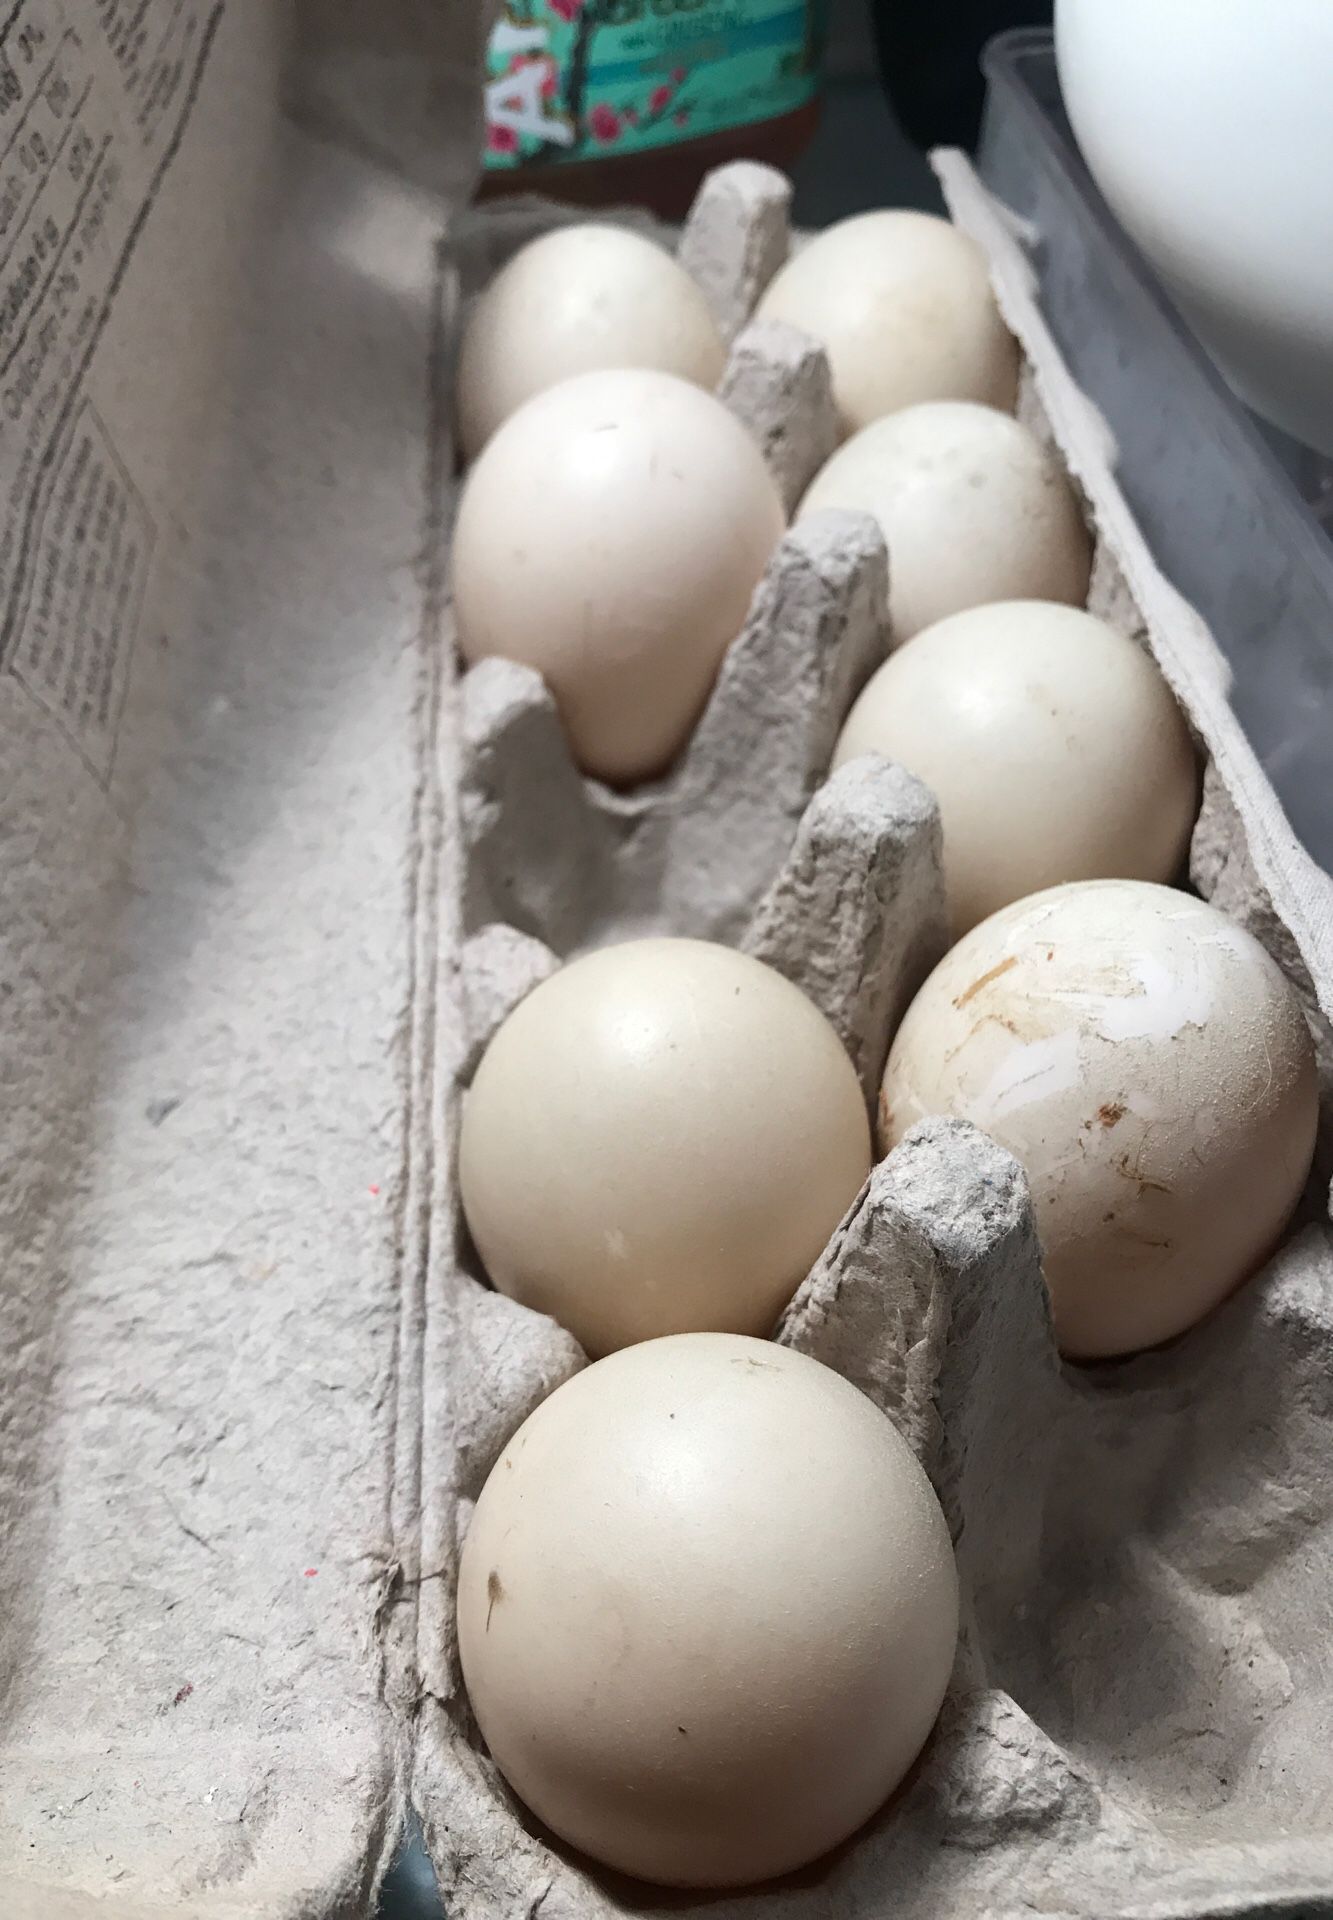 Farm fresh duck eggs